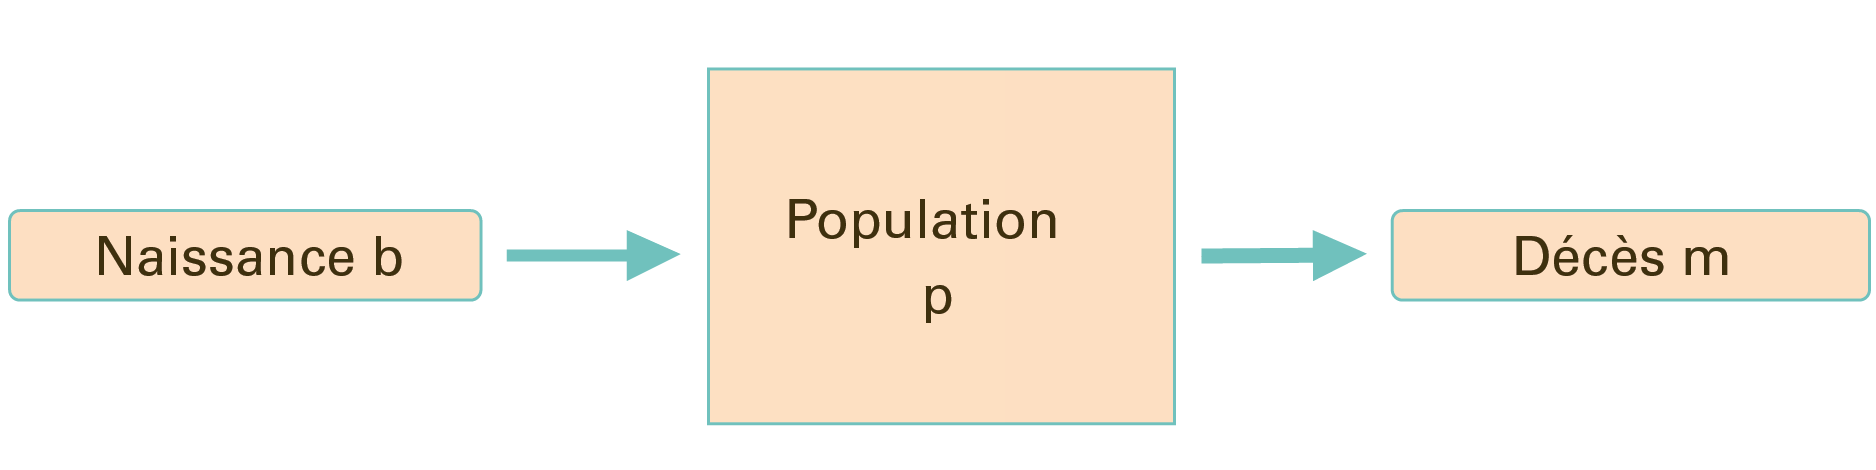 L'image 2 montre la population isolée $$P$$, qui n'augmente qu'avec la naissance et diminue avec la mort parce qu'il n'y a ni immigration ni émigration.